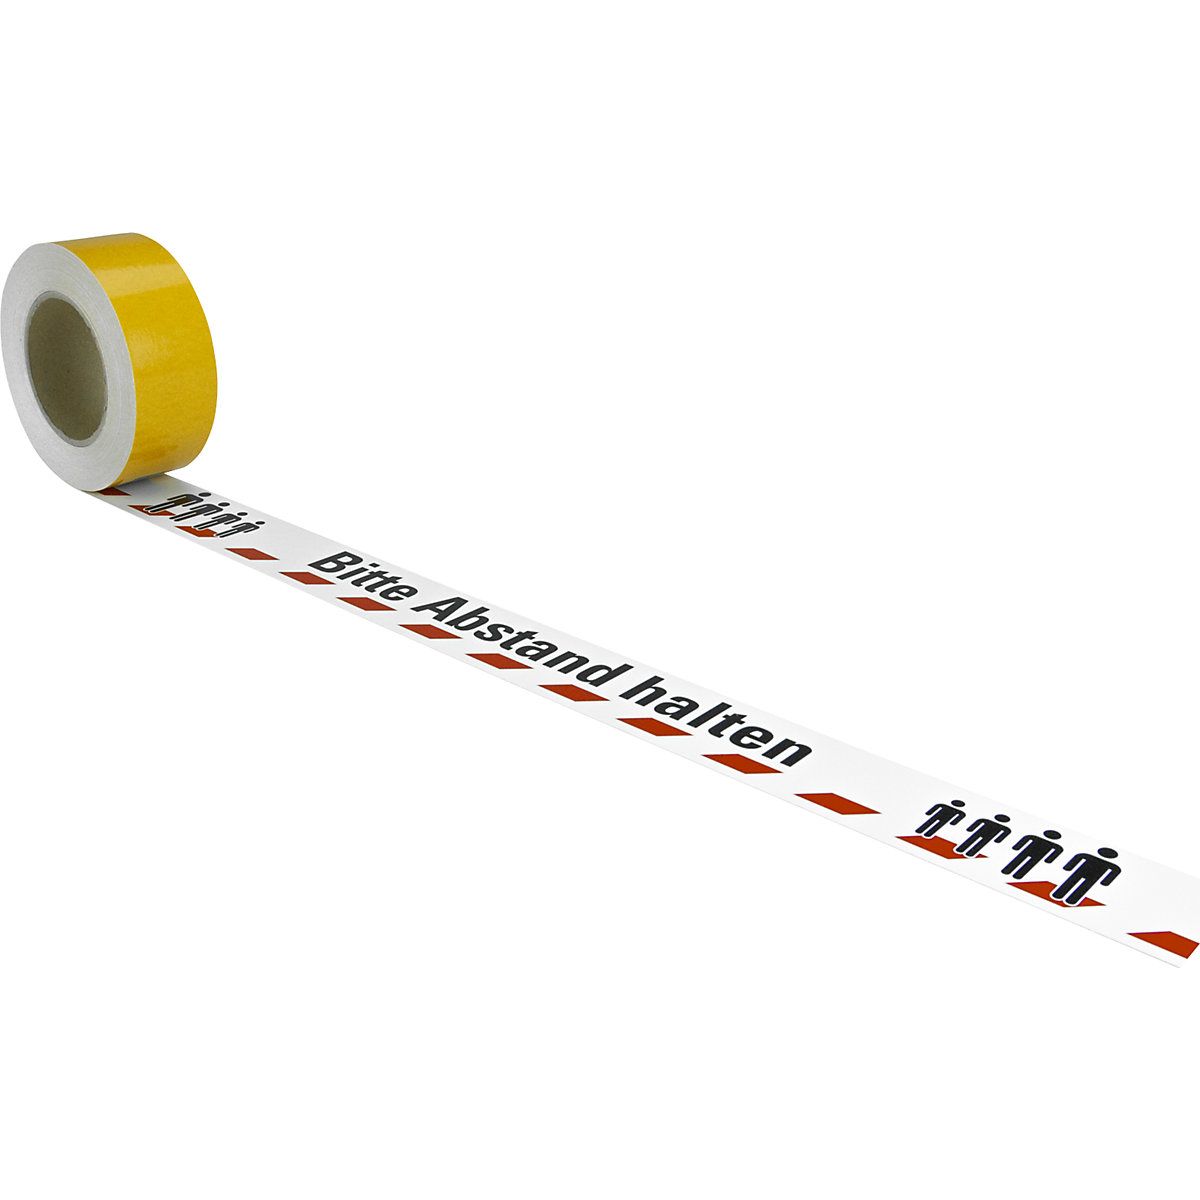 Bodenmarkierungsband, Aufdruck: Abstand halten, Länge 16 m, Breite 50 mm